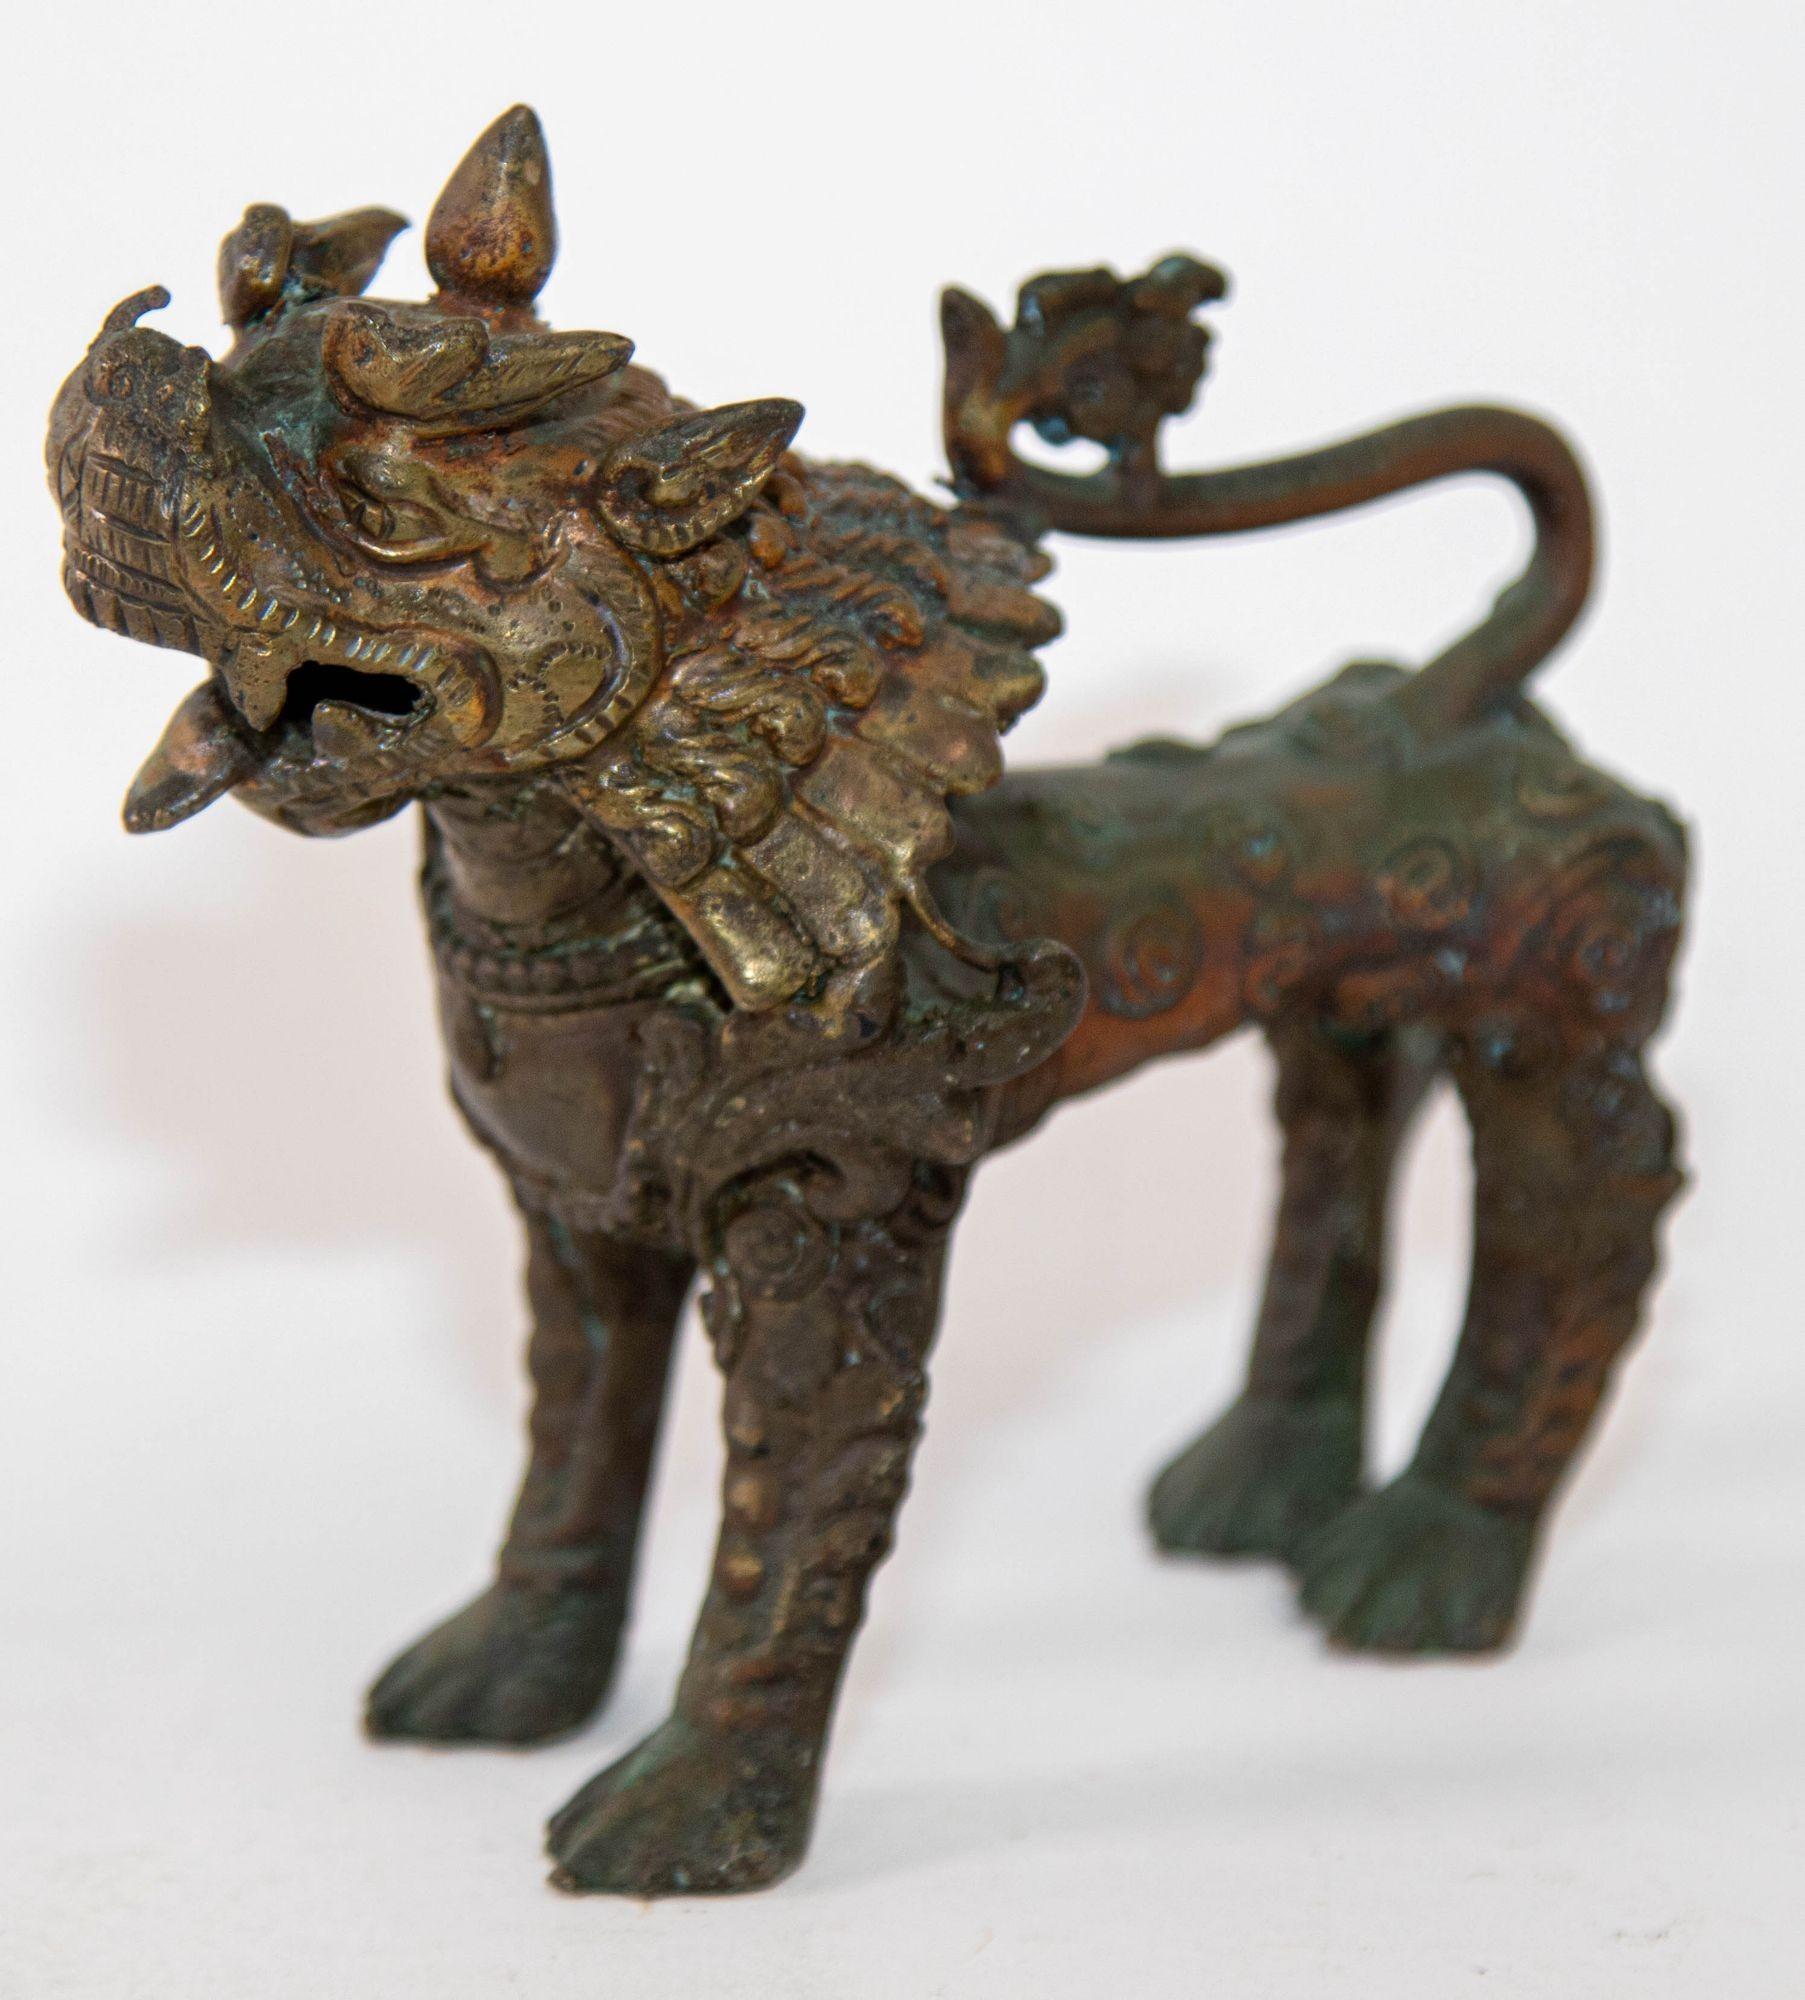 Antike asiatische Bronze Wächter Löwe Löwen Skulptur, Nepal 19. Jahrhundert.
Bronzefigur mit Spuren von Polychromie, die einen Tempelwächterlöwen mit offenem Maul, langer Mähne und defensiver Haltung auf vier ausgestreckten Beinen darstellt.
Der